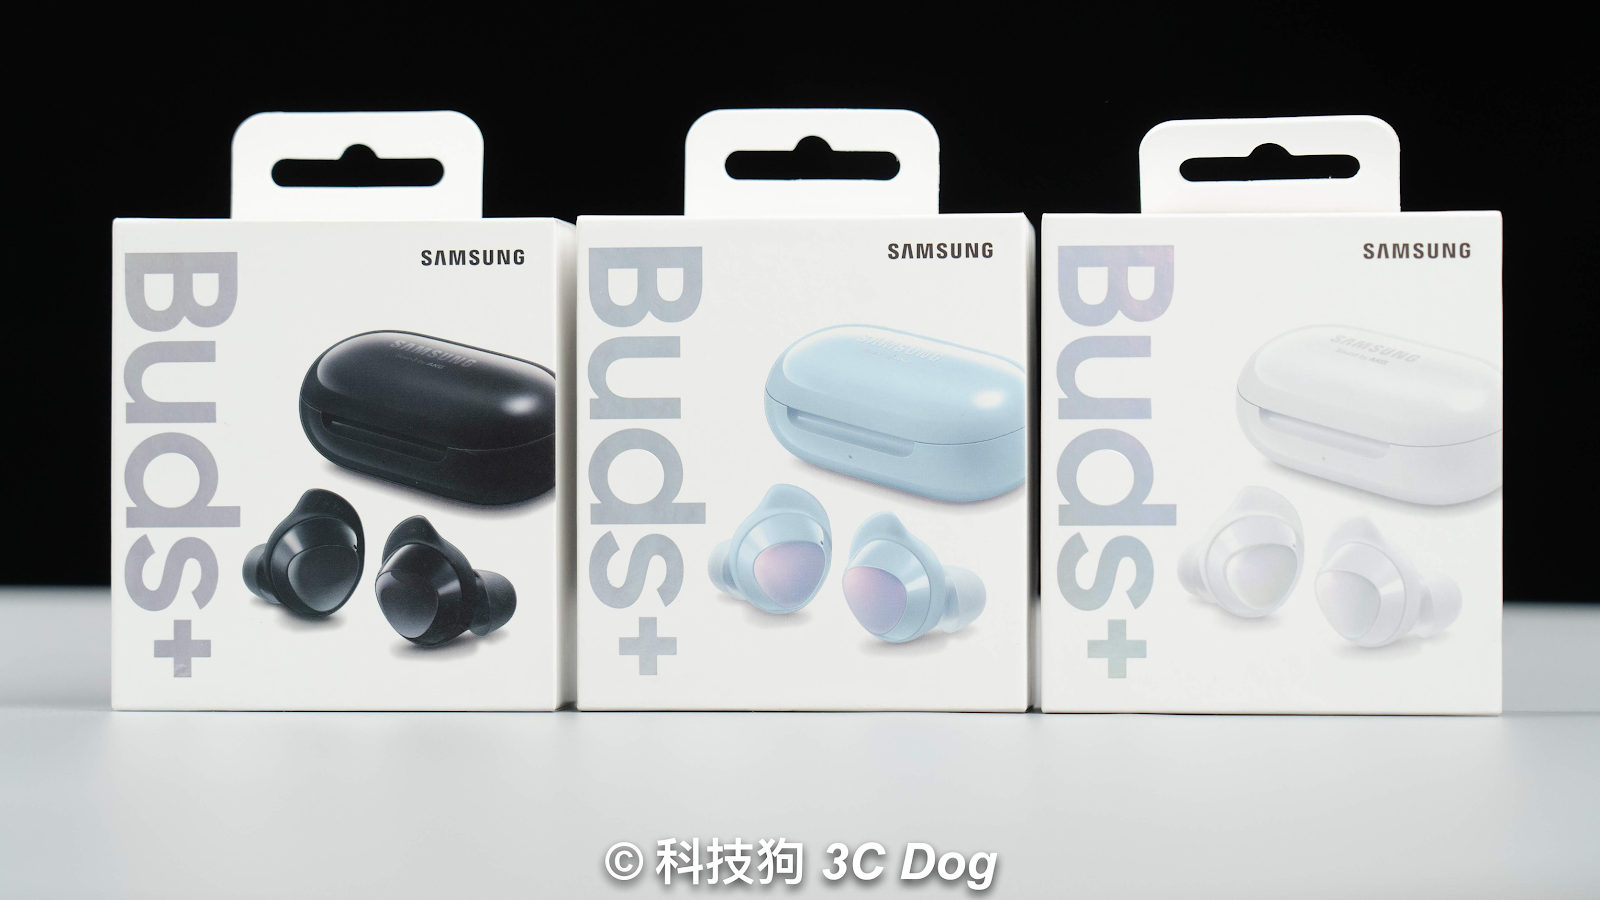 【開箱上手】三星 Samsung Galaxy Buds+ 和 Galaxy Buds 比一比！進步那些地方？iOS / Android 皆適用｜真無線藍牙耳機、快充、續航、外觀提升｜科技狗 - Galaxy Buds+, 三星, 三星耳機, 三星贈品, 真無線, 真無線藍牙耳機, 耳機, 藍牙耳機, 贈品耳機 - 科技狗 3C DOG